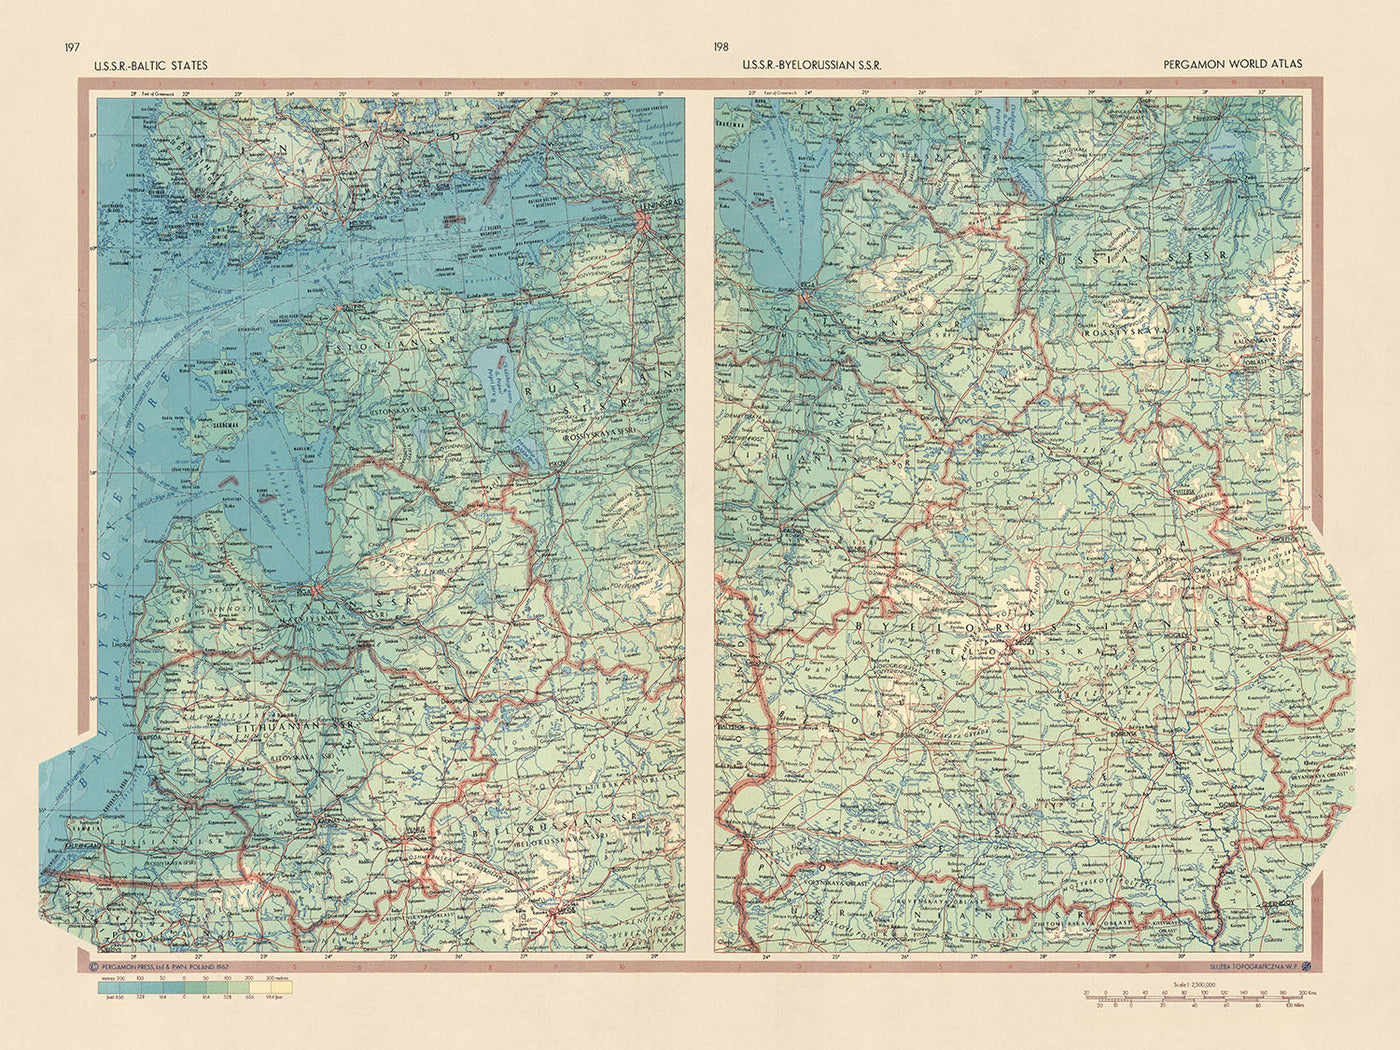 Alte Karte der baltischen Staaten und Weißrusslands, Topografischer Dienst der polnischen Armee, 1967: Riga, Minsk, Vilnius, Rigaer Meerbusen, Kurisches Haff